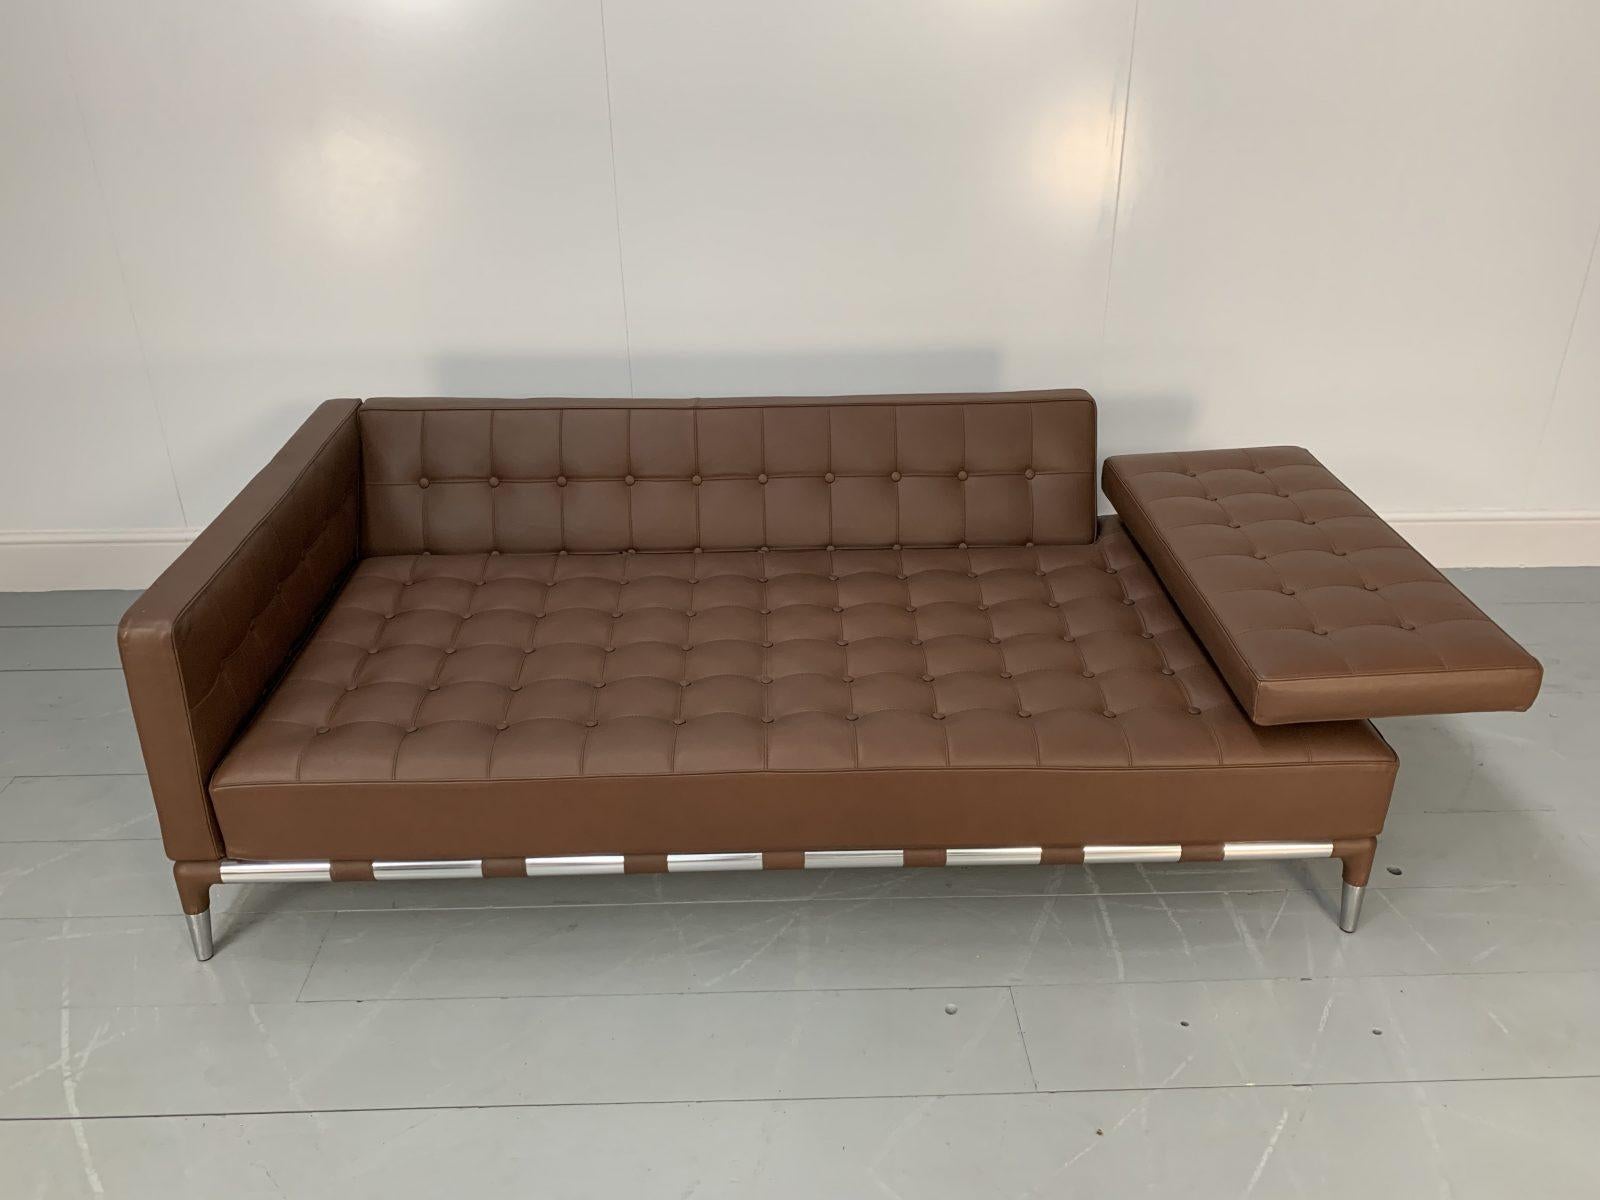 Cassina “241 Prive Divano” Sofa – in Mid-Brown “Pelle” Leather 5